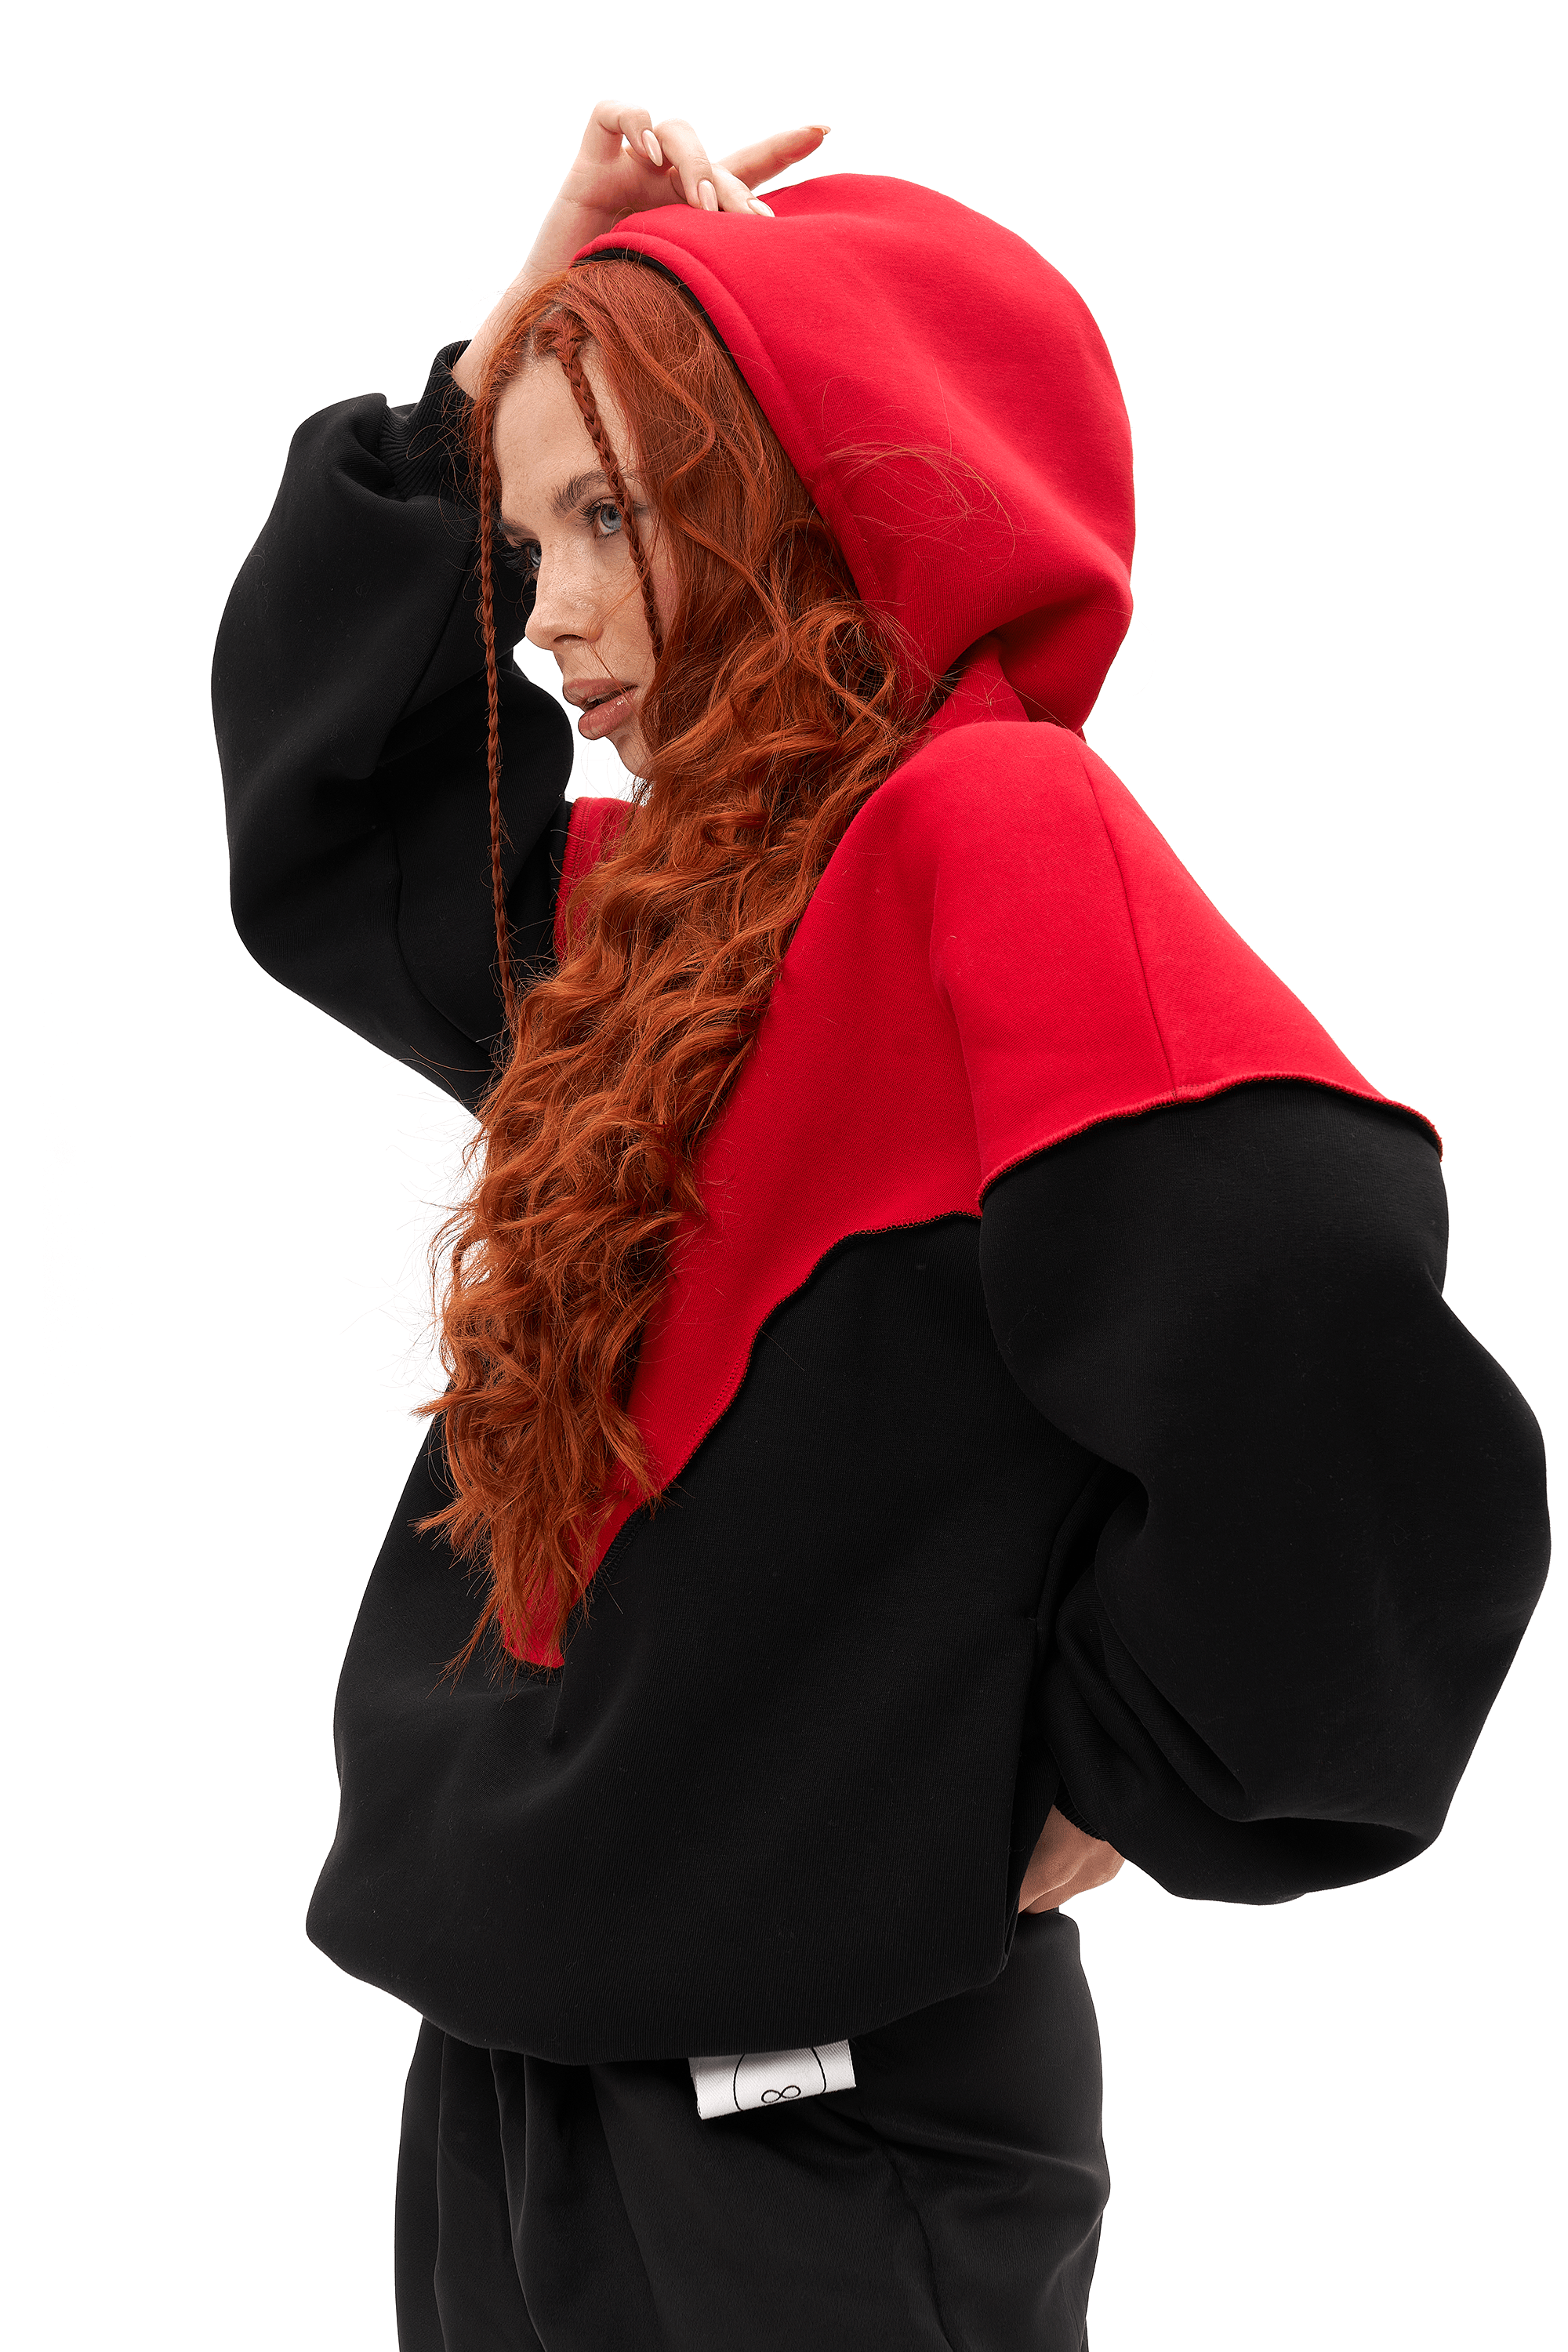 BE Black Red hoodie - yesUndress